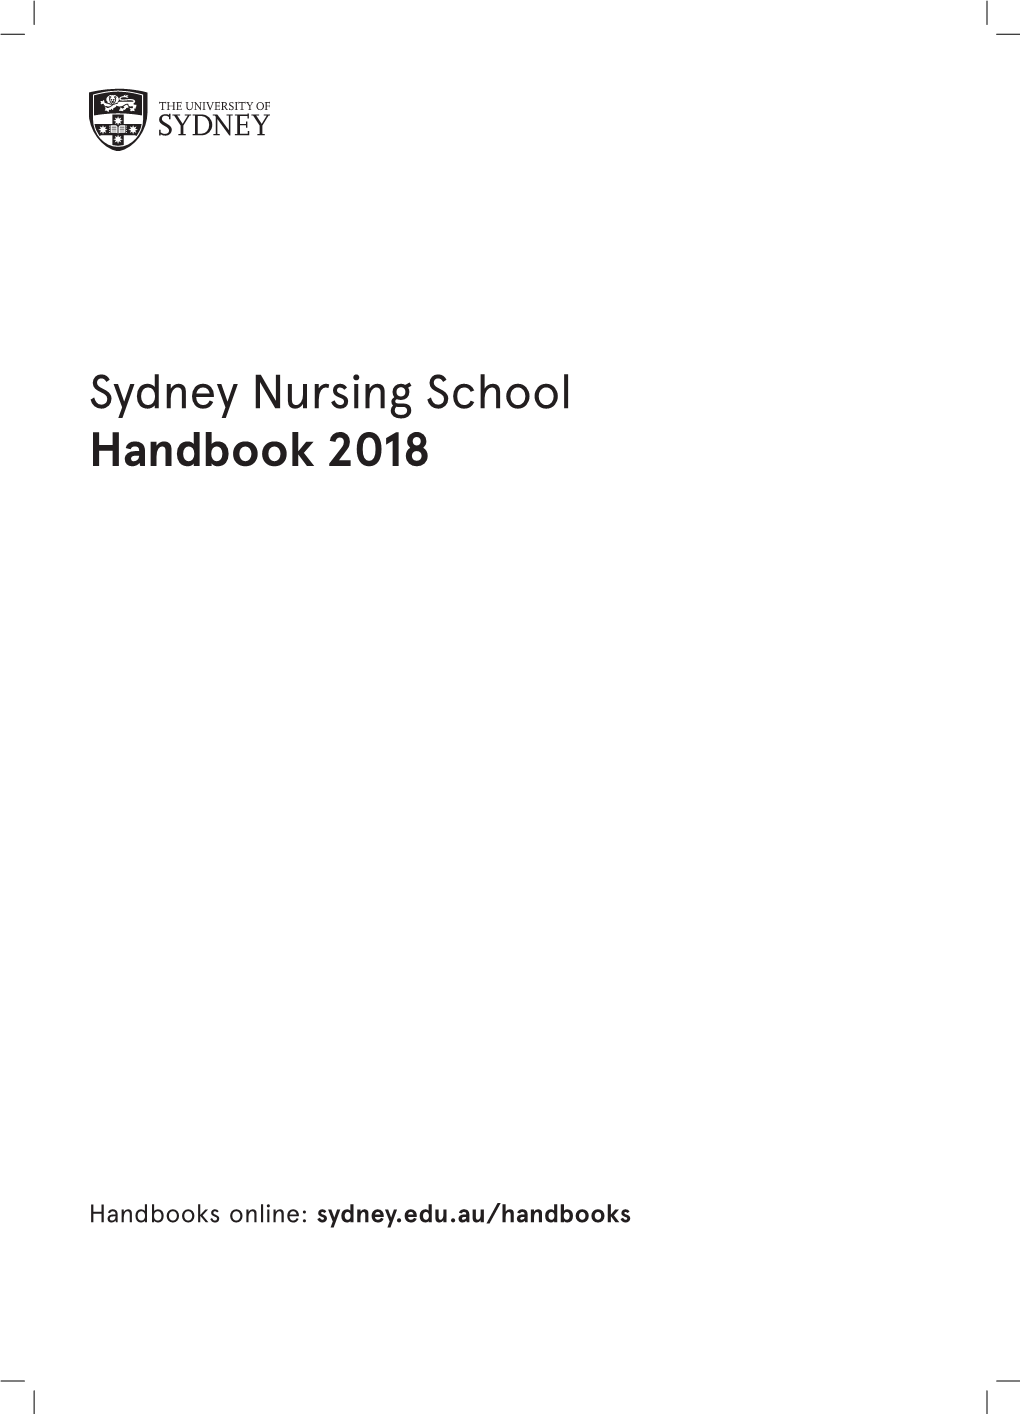 Sydney Nursing School Handbook 2018